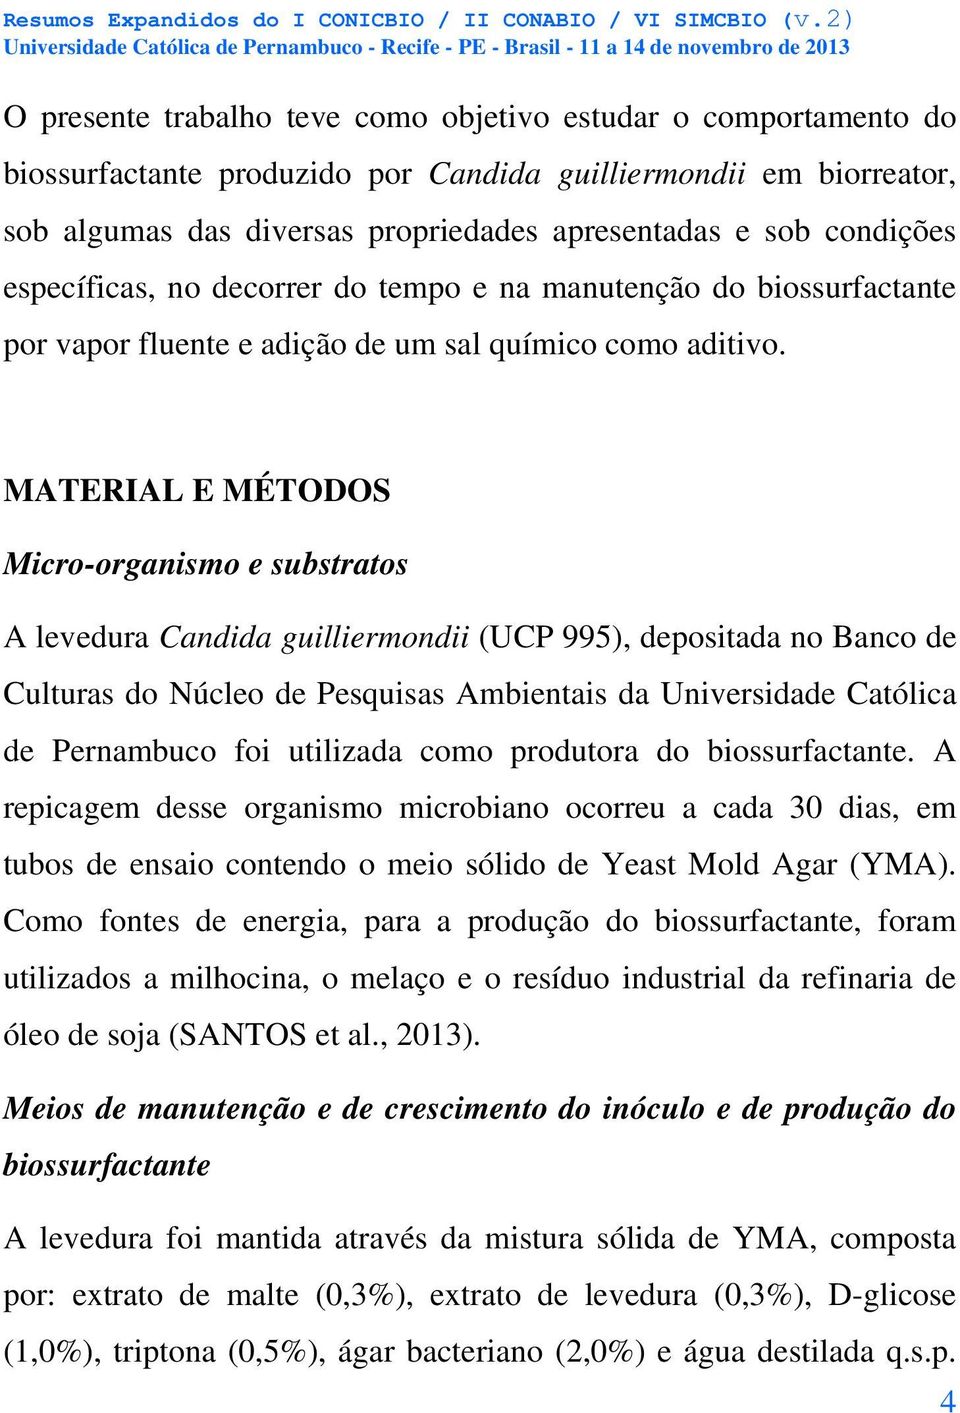 MATERIAL E MÉTODOS Micro-organismo e substratos A levedura Candida guilliermondii (UCP 995), depositada no Banco de Culturas do Núcleo de Pesquisas Ambientais da Universidade Católica de Pernambuco